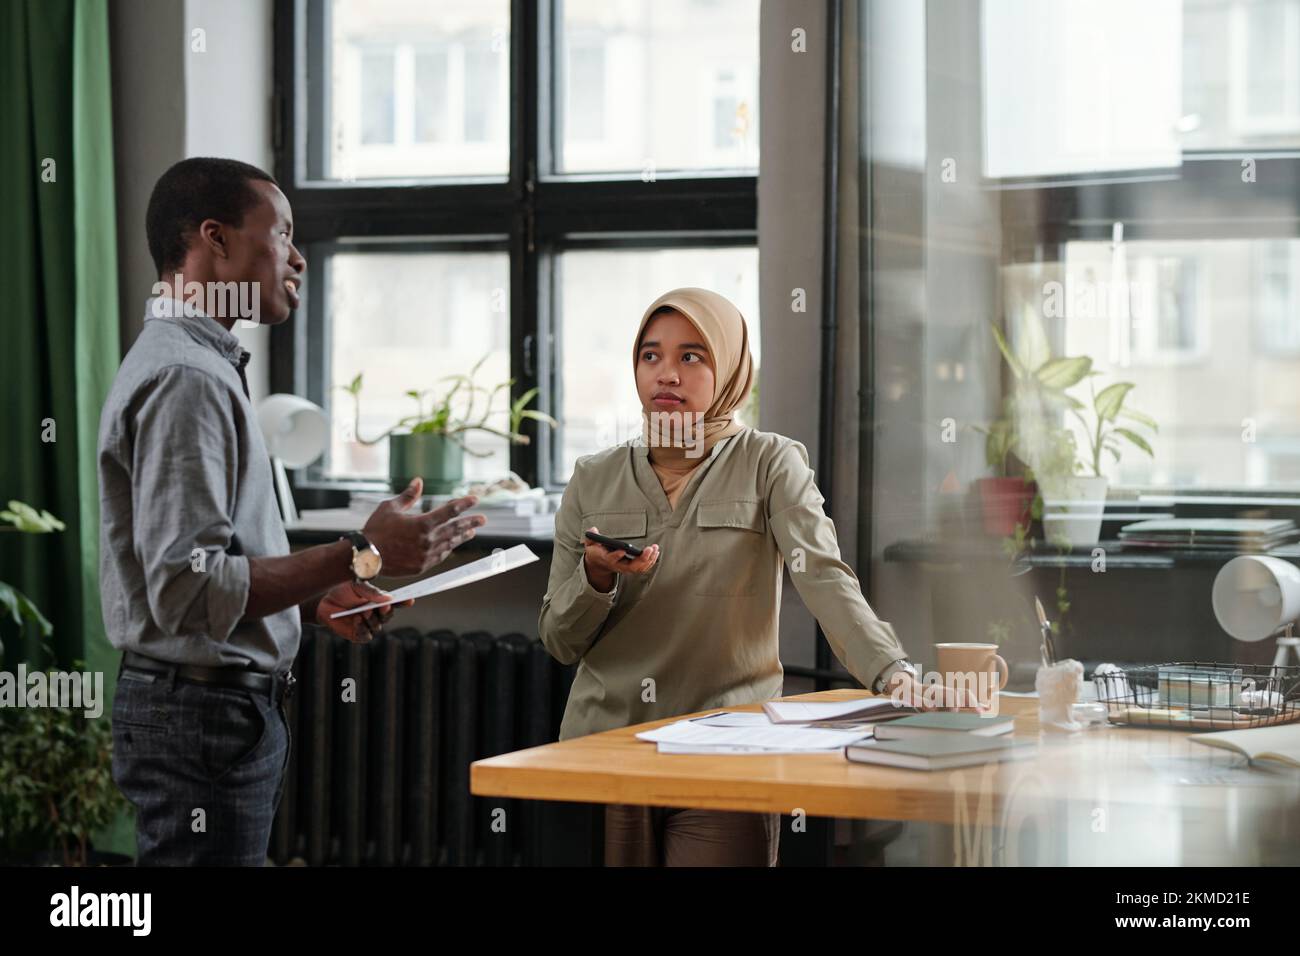 Junge muslimische Geschäftsfrau, die zuversichtlichem afroamerikanischen männlichen Kollegen zuhört, der bei der Sitzung einen Bericht über die Erstellung von Dokumenten vorlegt Stockfoto